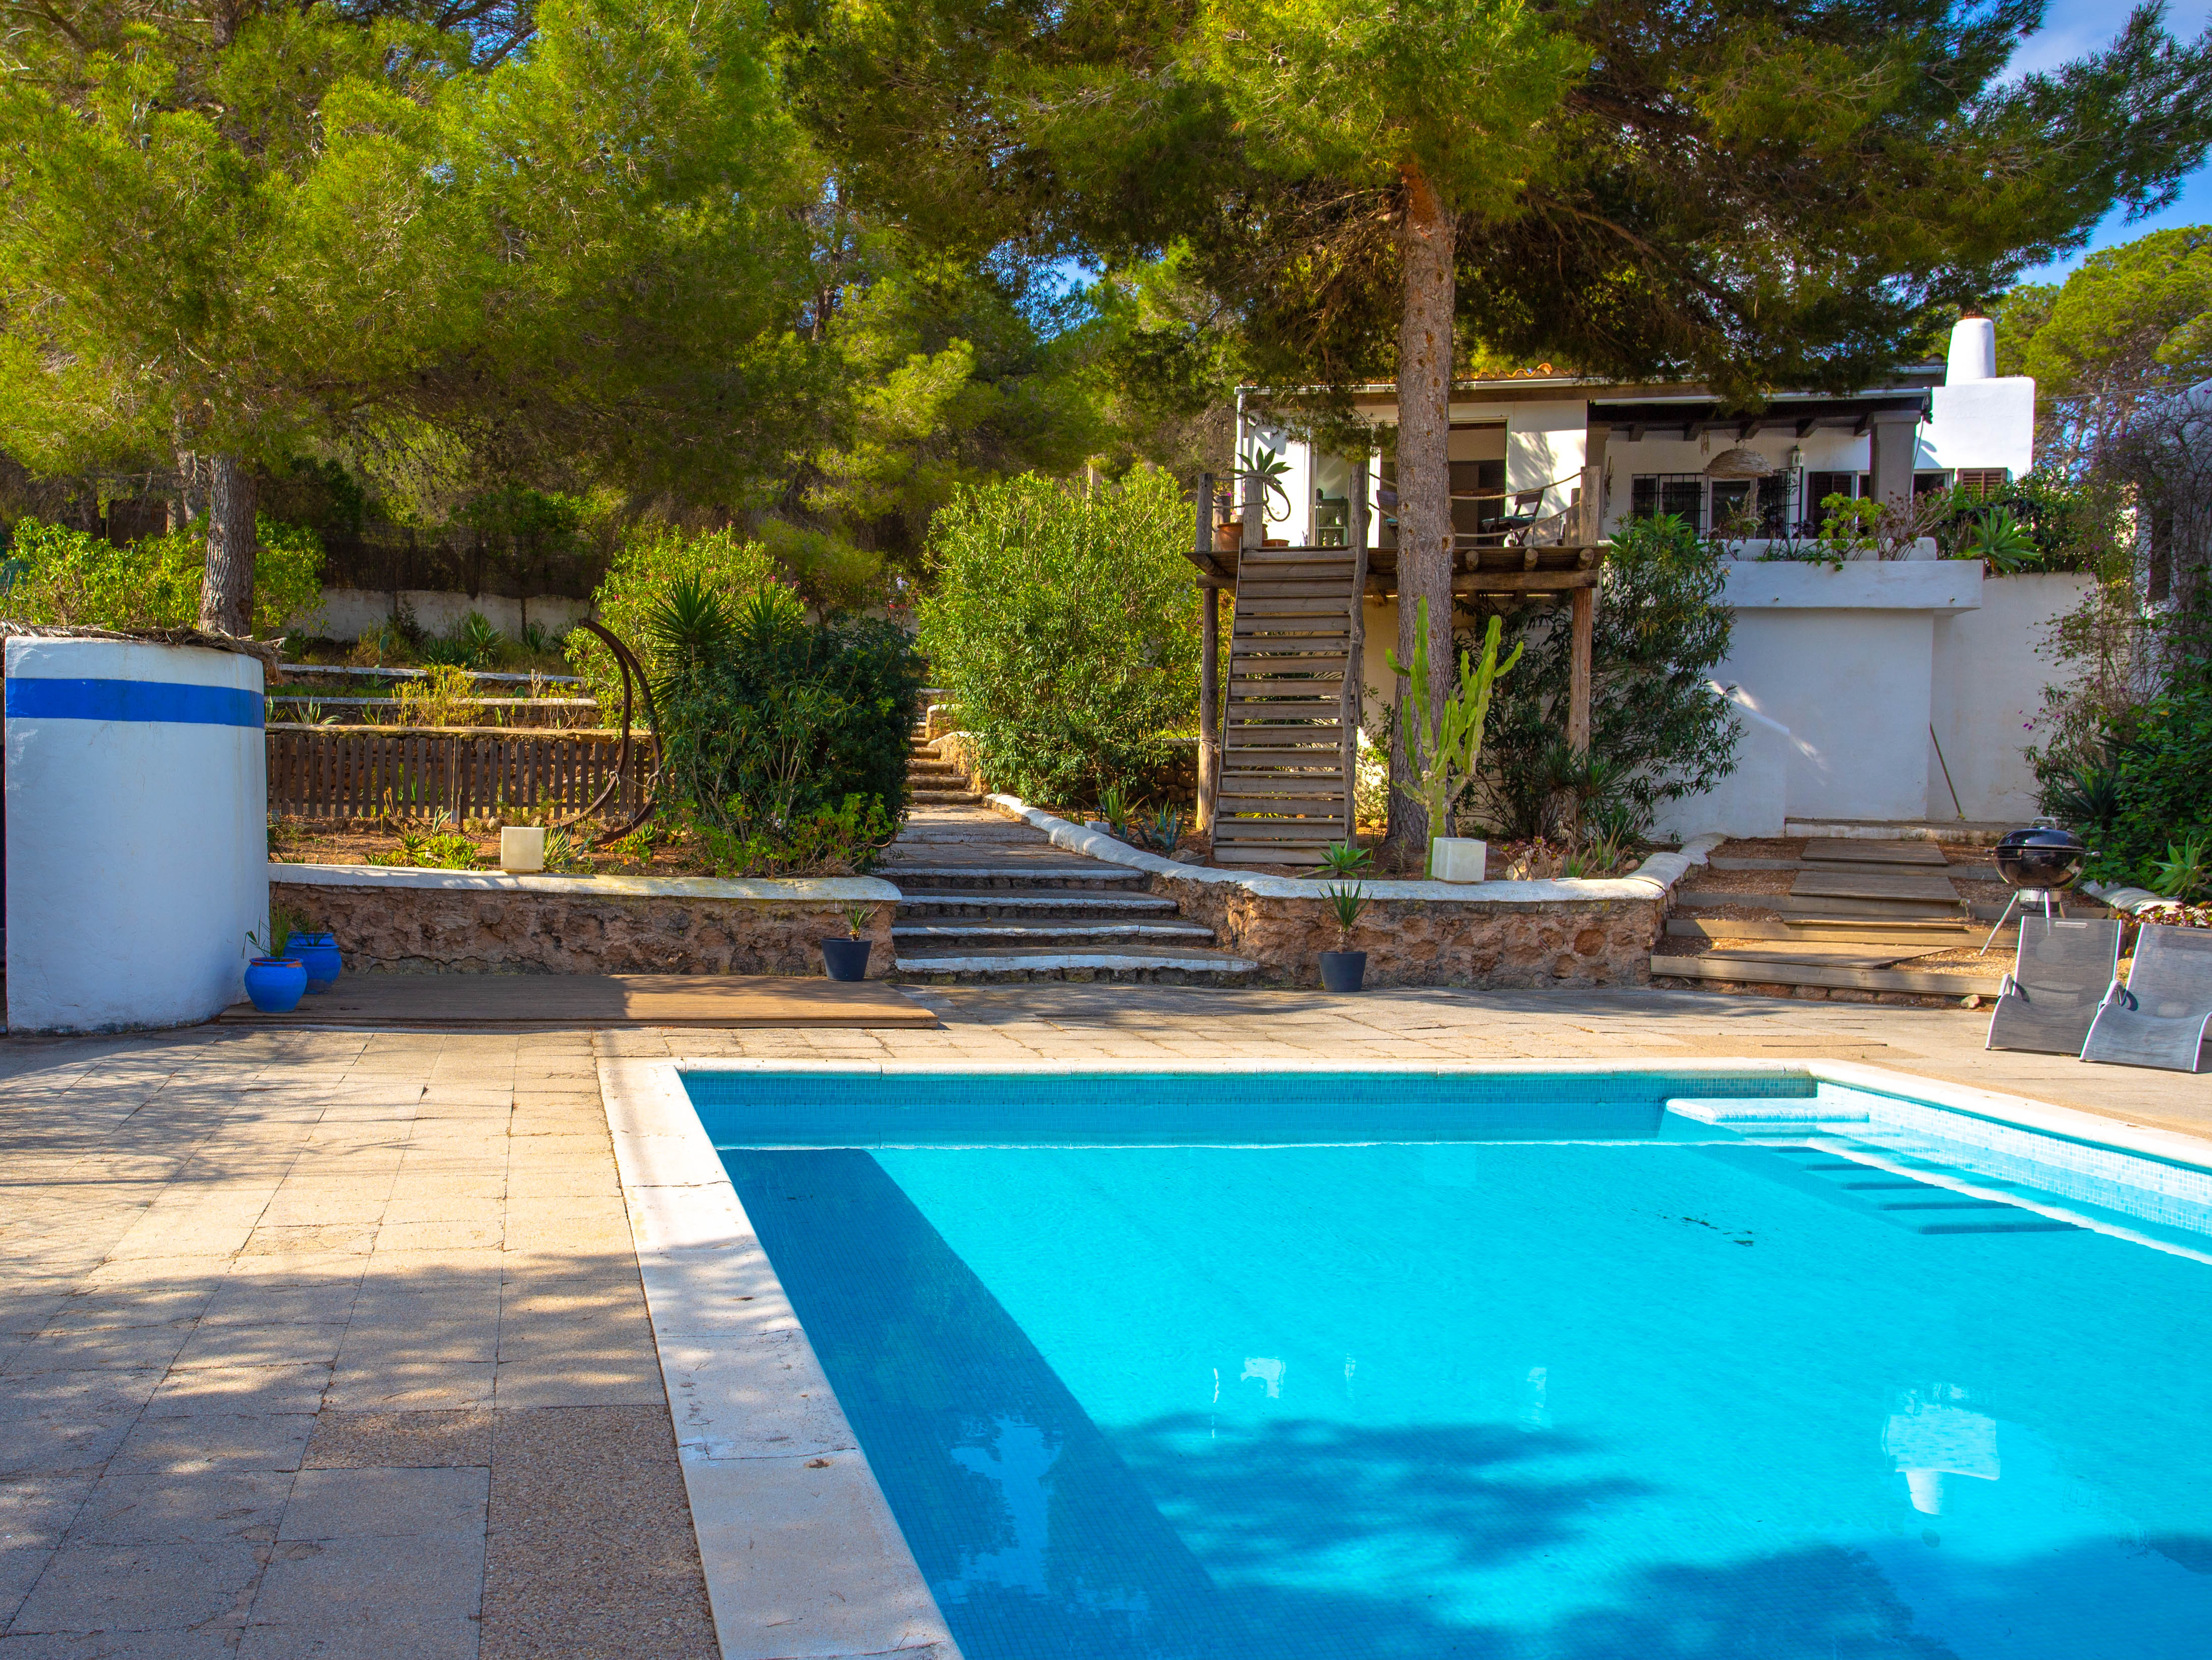 Maison de type Finca en groupe de 3 avec piscine et vue magnifique.